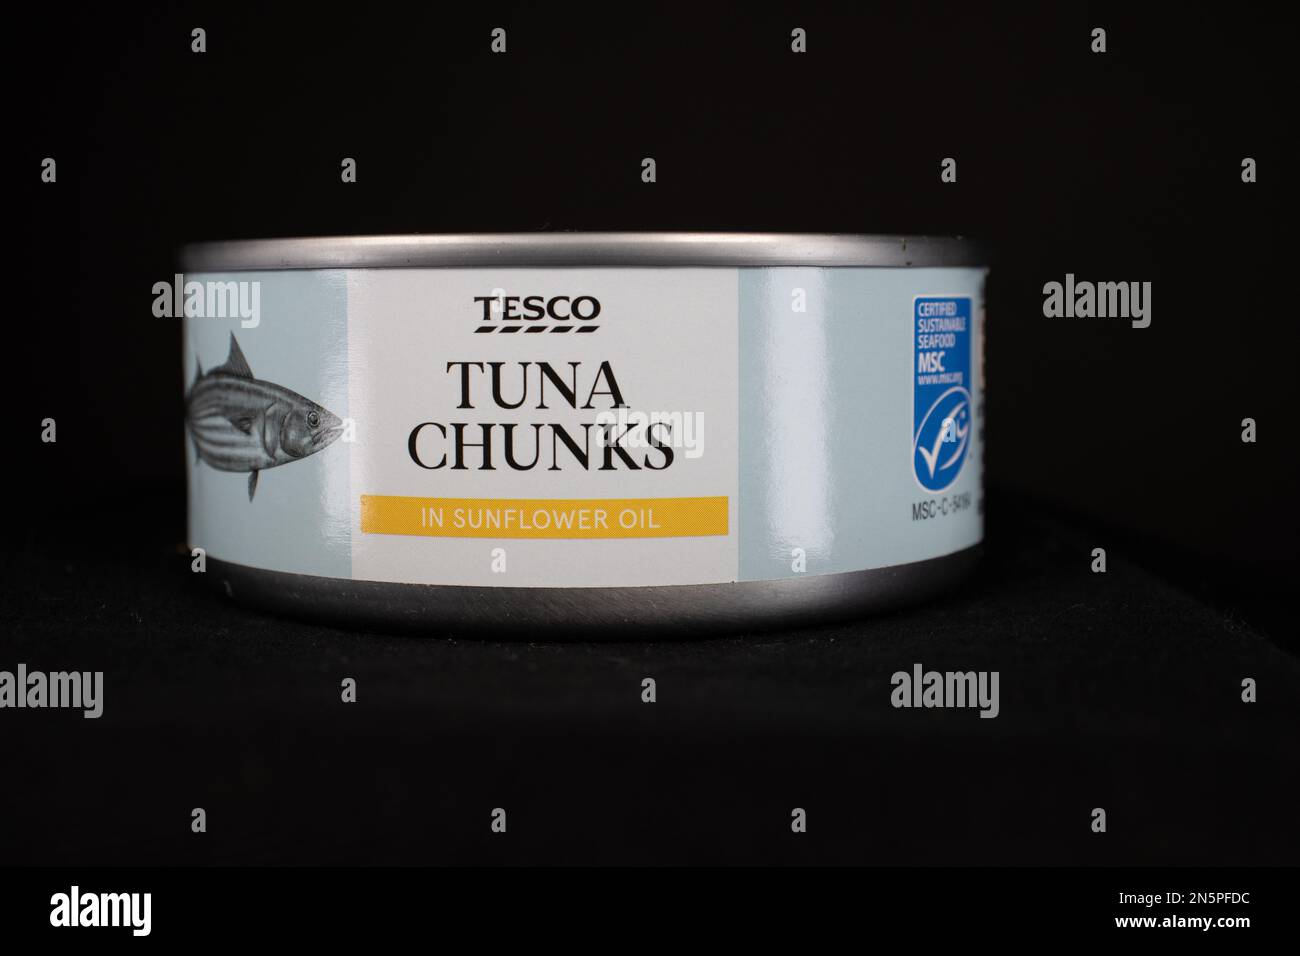 EXETER, DEVON, Reino Unido - 10 DE ENERO de 2023 Tesco British multinacional de comestibles y venta minorista de mercancías en general de productos de Tune Chunks en girasol oi Foto de stock